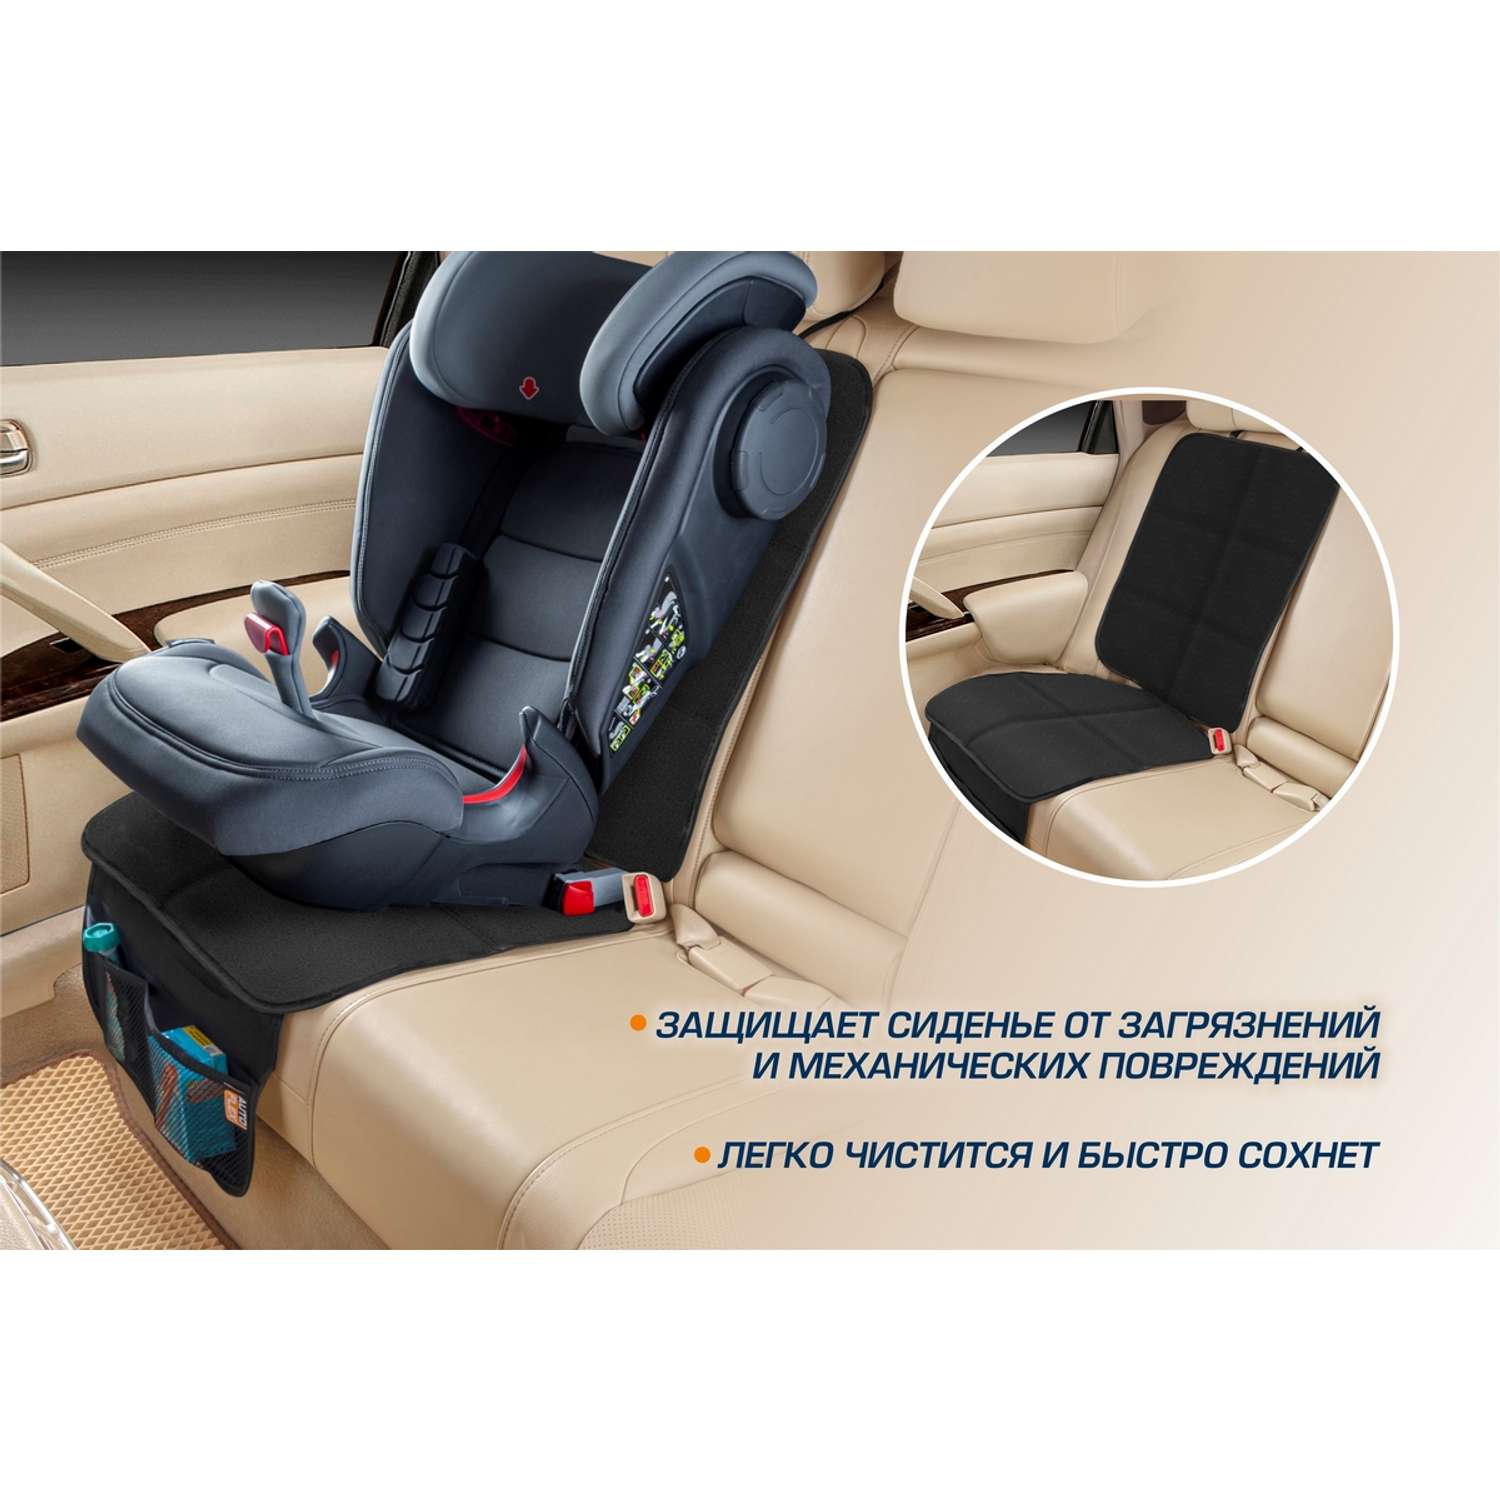 Защитная накидка на сиденье AutoFlex под детское автокресло 91102 - фото 4